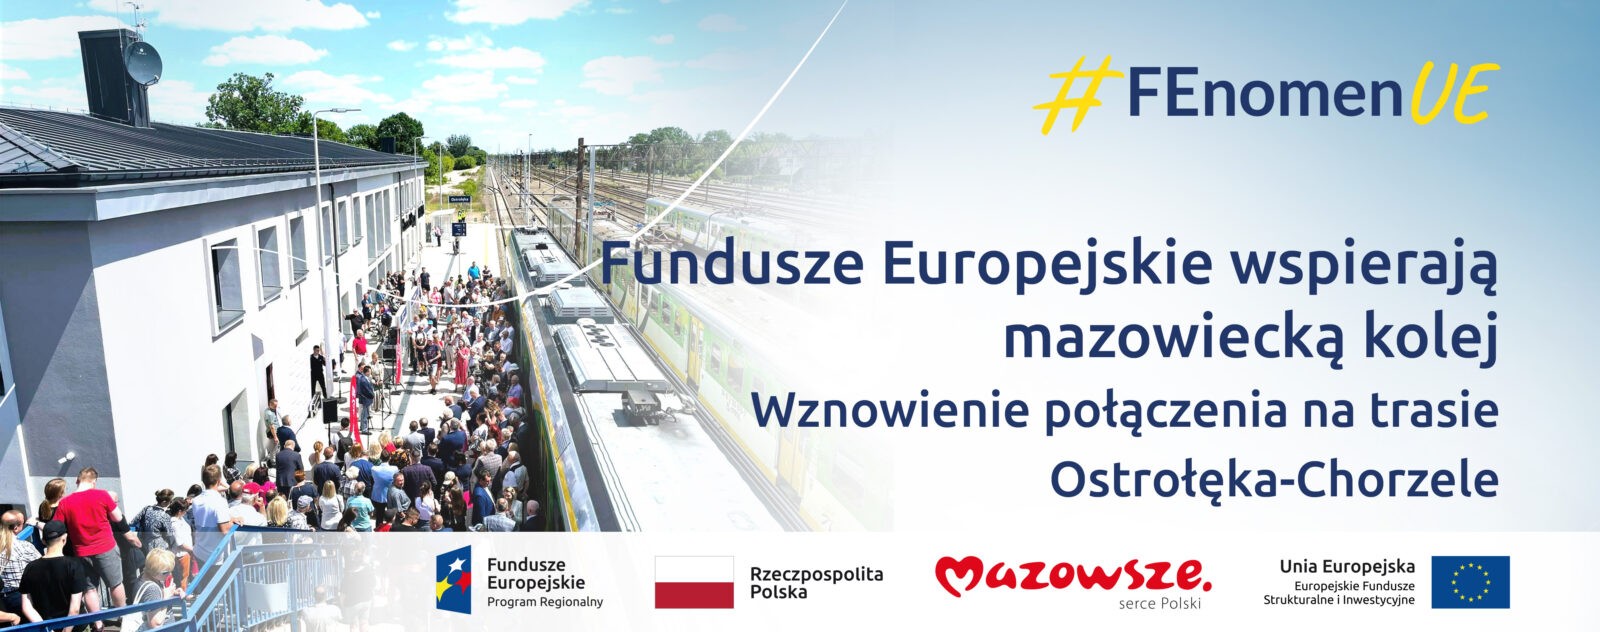 Na grafice znajduje się hasło: Fundusze Europejskie wspierają mazowiecką kolej. Wznowienie połączenia na trasie Ostrołęka-Chorzele. Obok zdjęcie stacji Ostrołęka oraz osób uczestniczących w otwarciu linii.